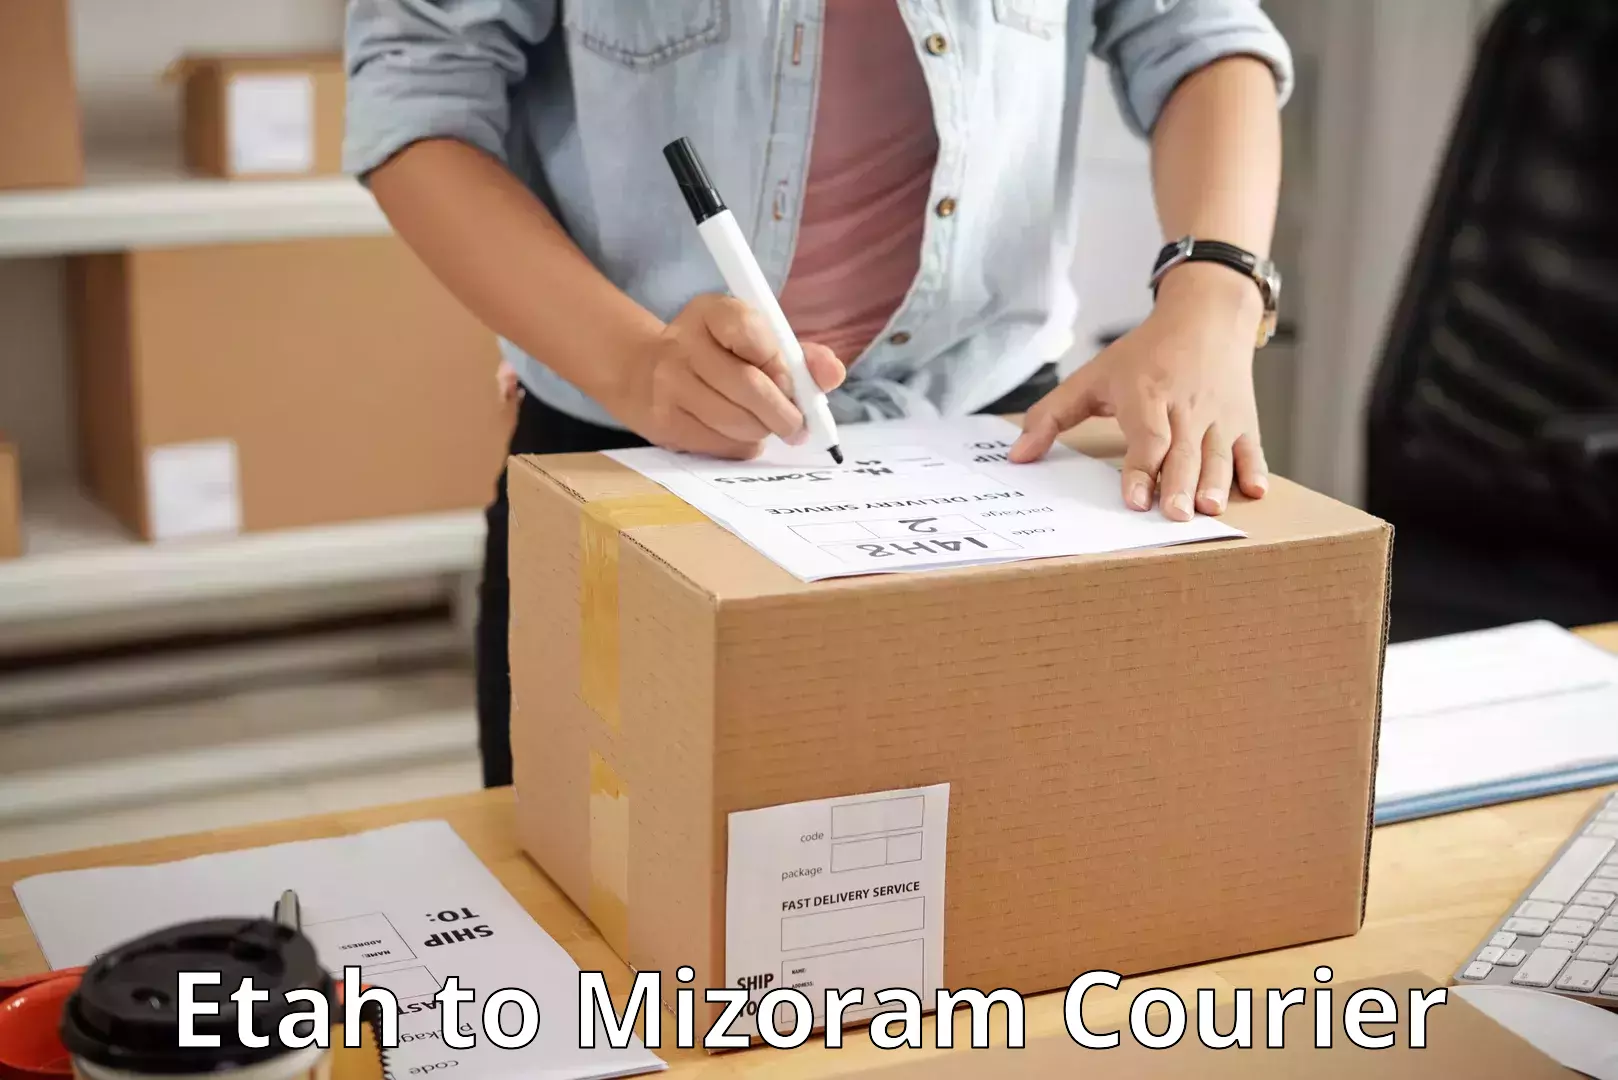 Corporate courier solutions Etah to Mizoram